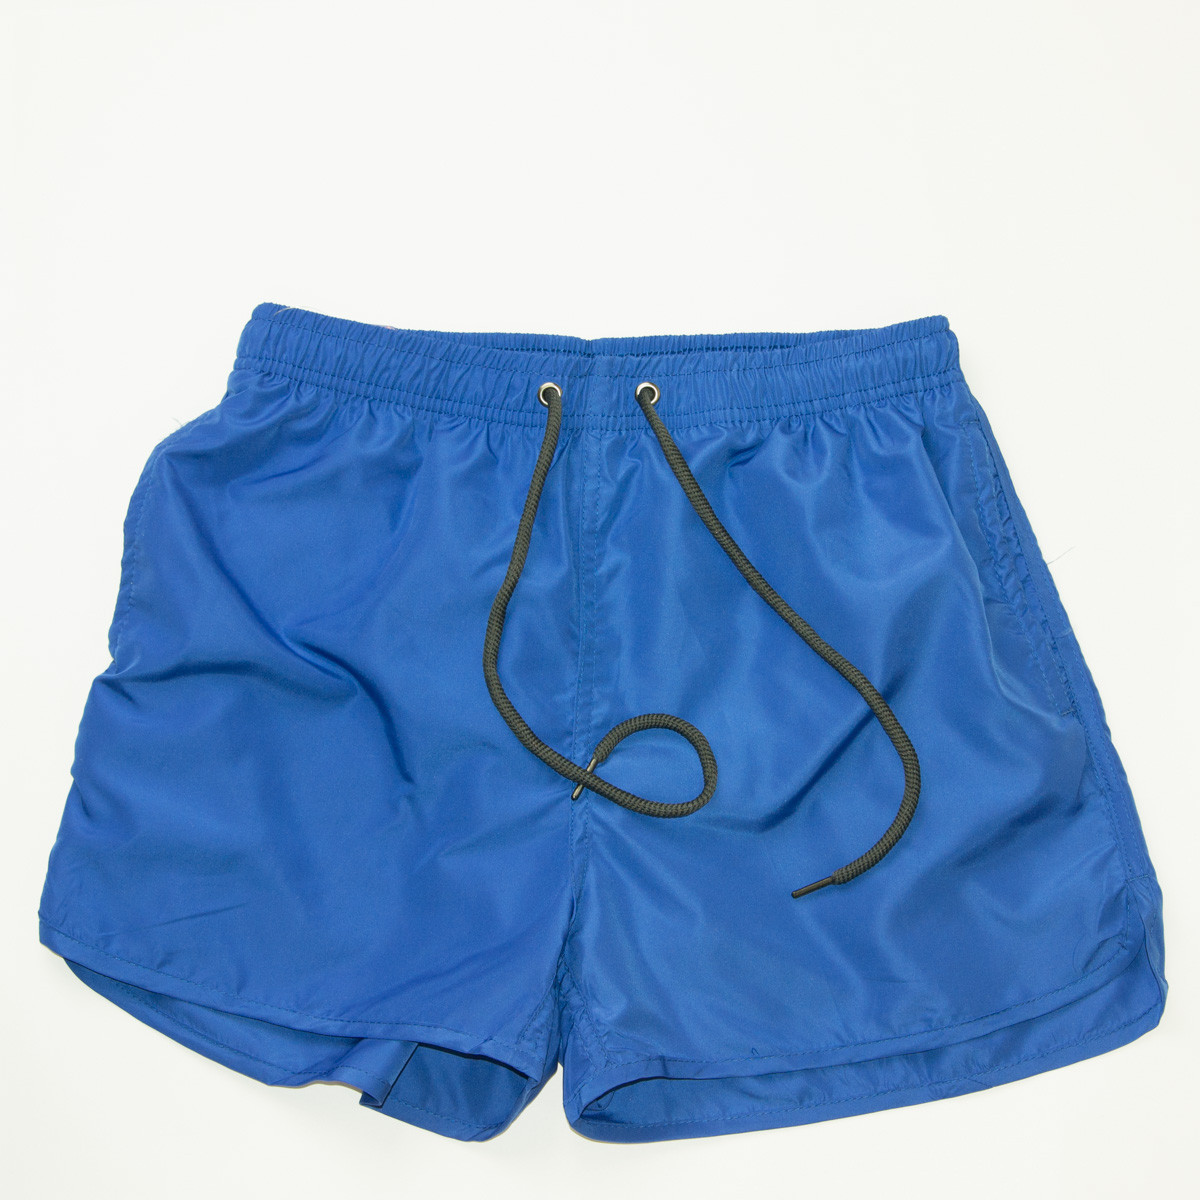 Чоловічі пляжні шорти для купання (арт. 201510/1) сині М